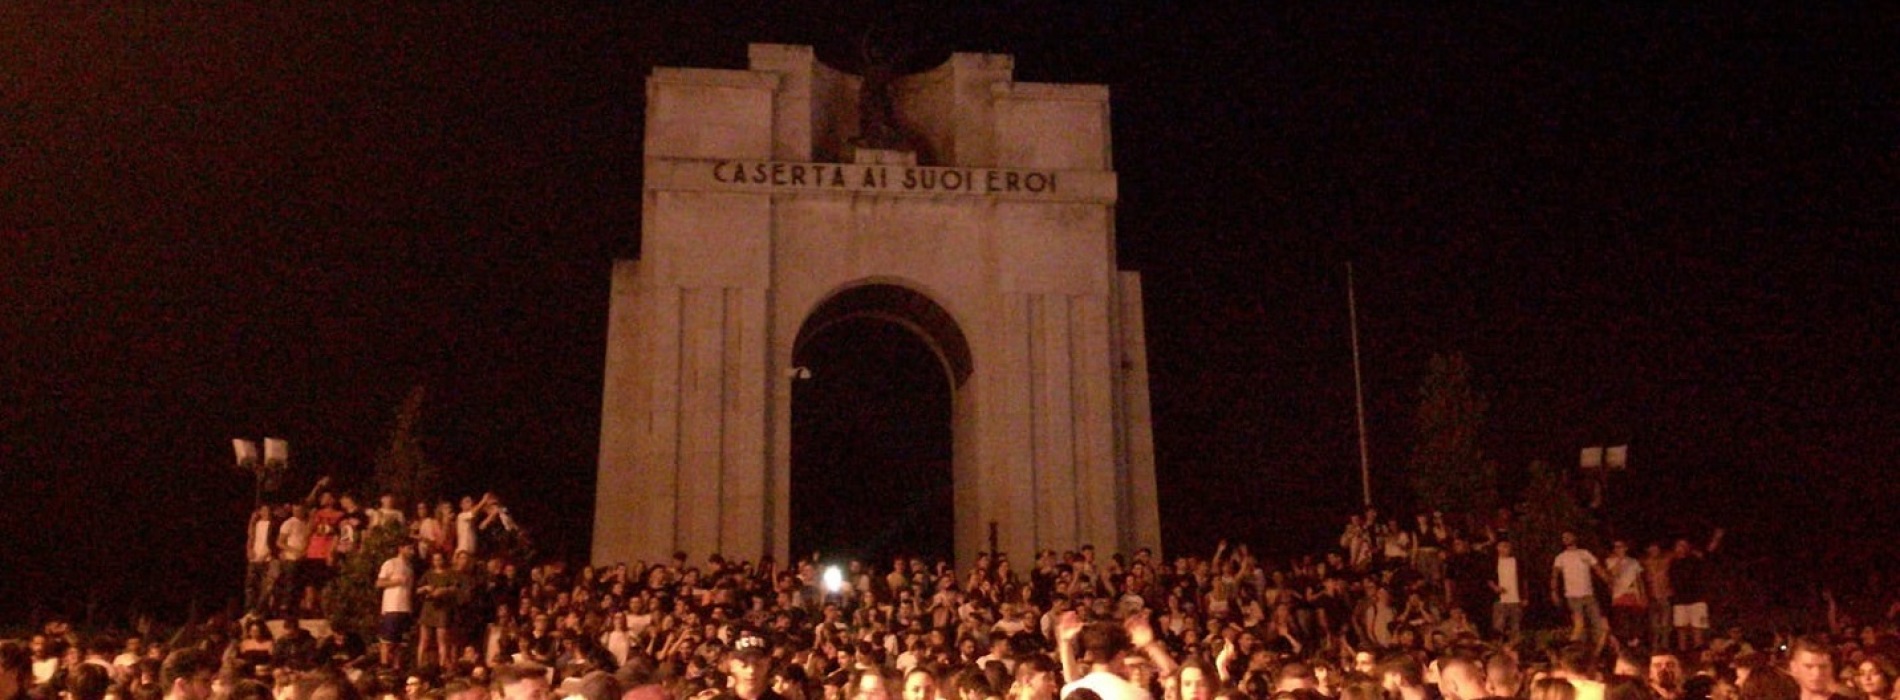 Caserta, al Monumento gli eroi della notte prima degli esami